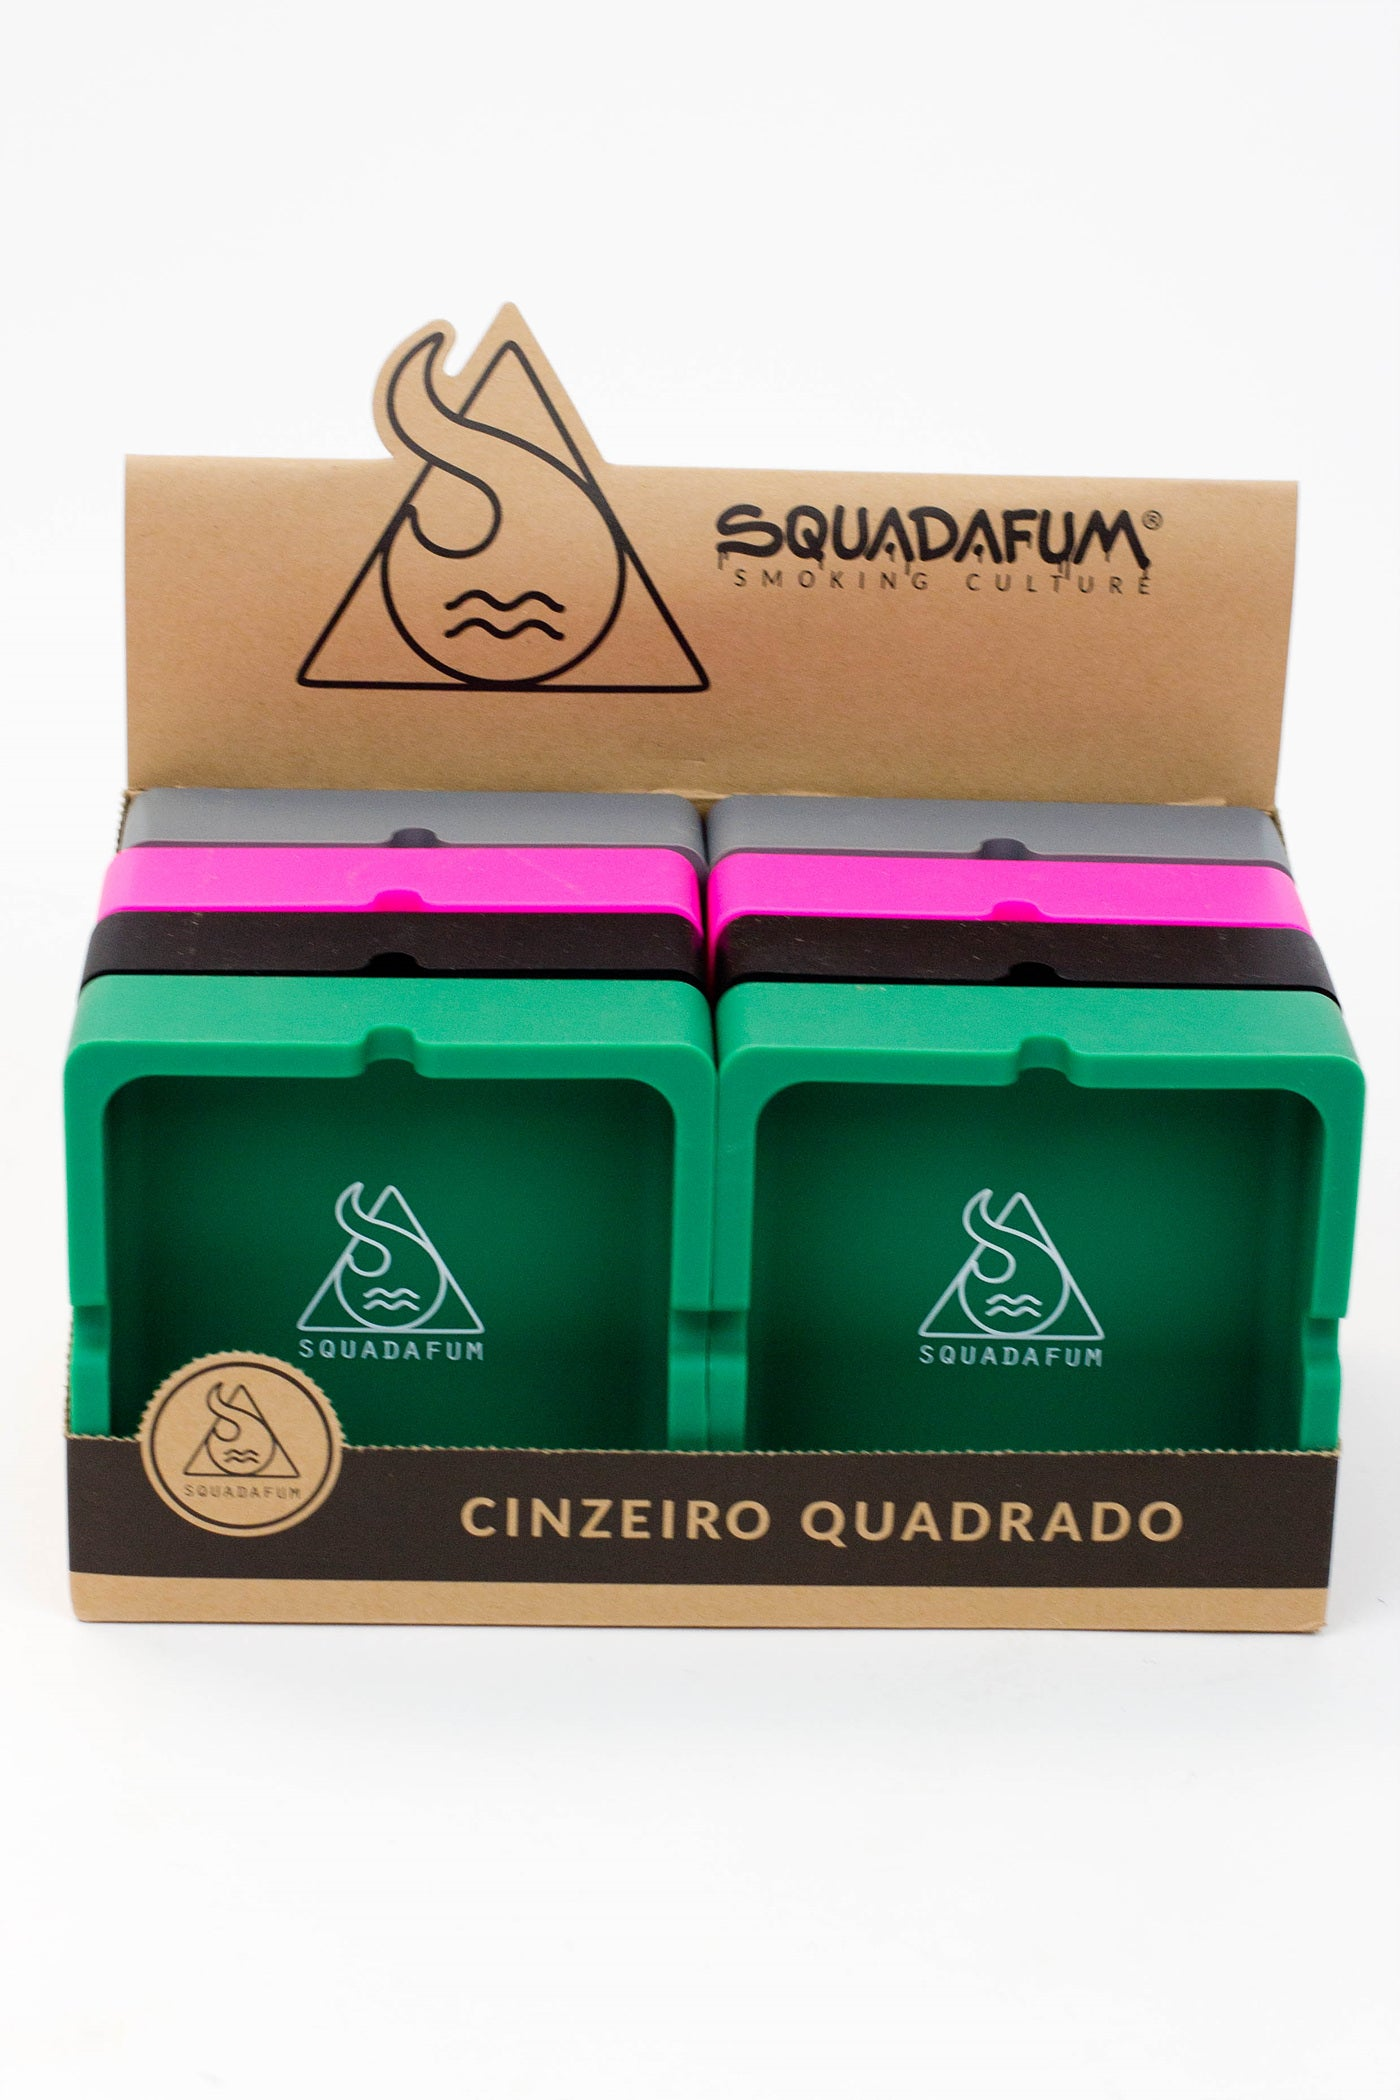 Squadafum Silicone Square Ashtray Box of 8_0